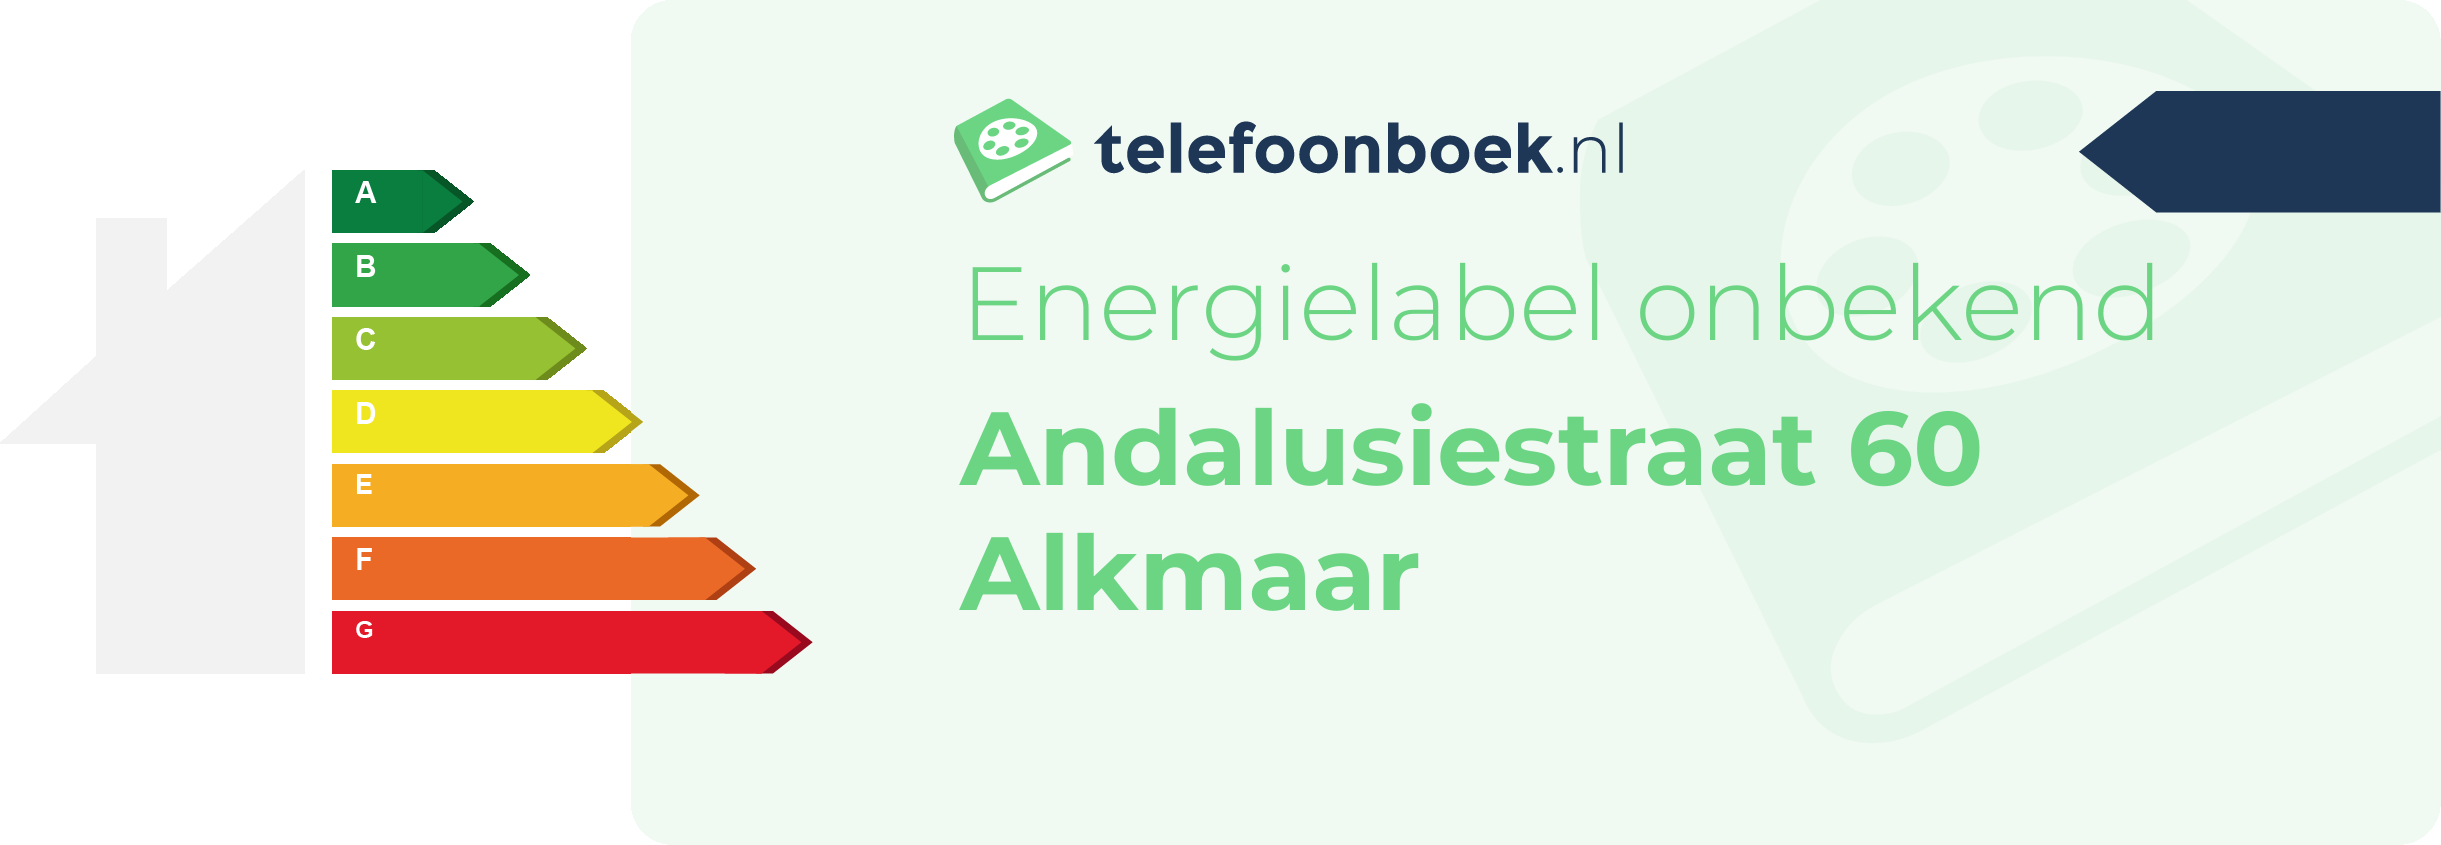 Energielabel Andalusiestraat 60 Alkmaar